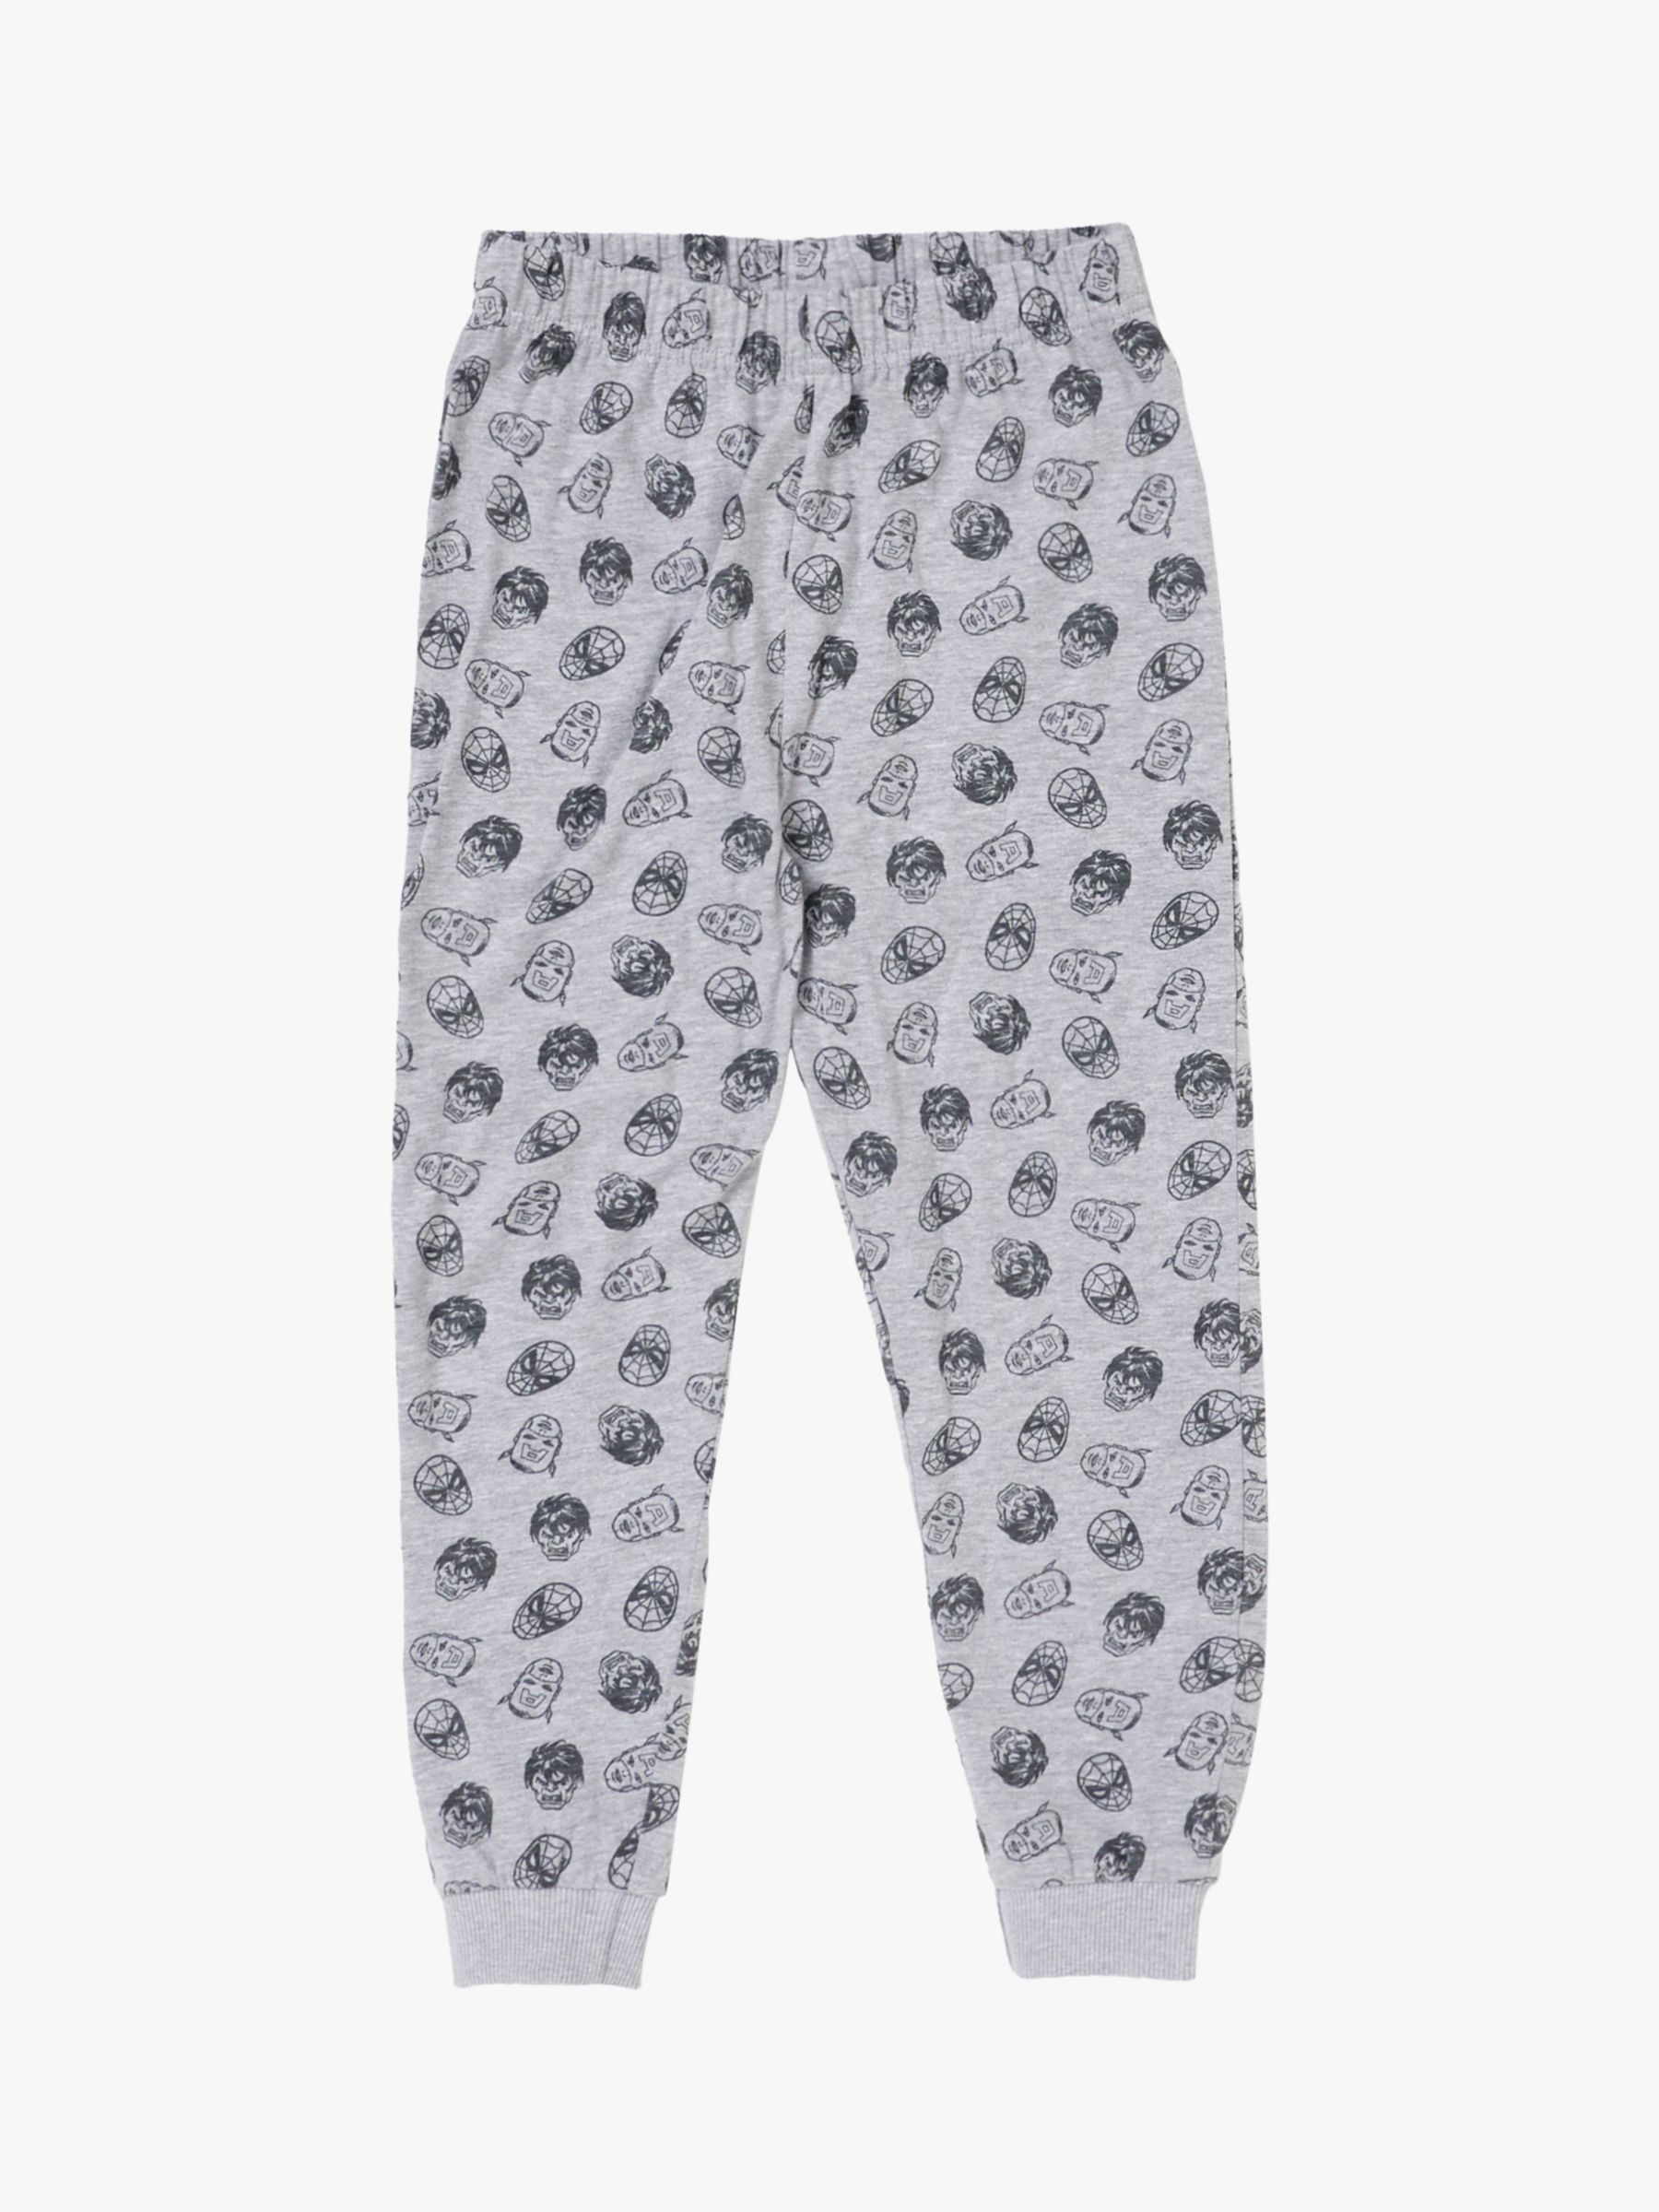 Buy Angel & Rocket Kids' Marvel Cotton Blend Pyjama Set, Grey Online at johnlewis.com